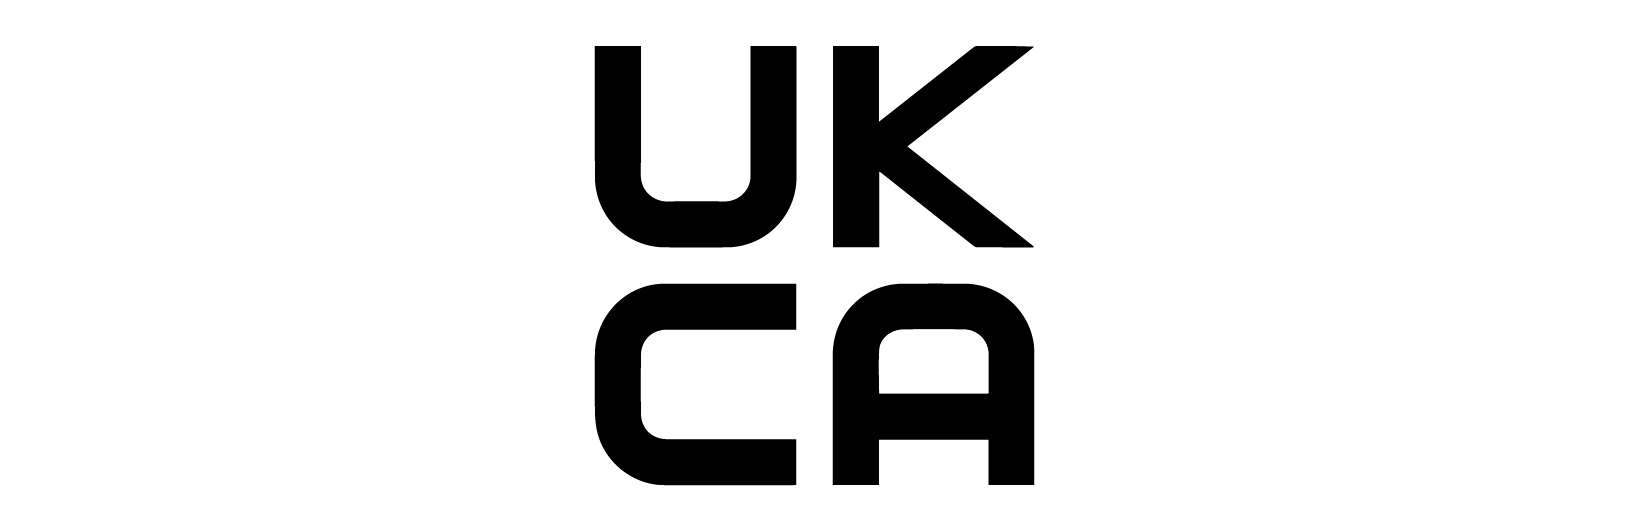 UKCA product marking AFRISO